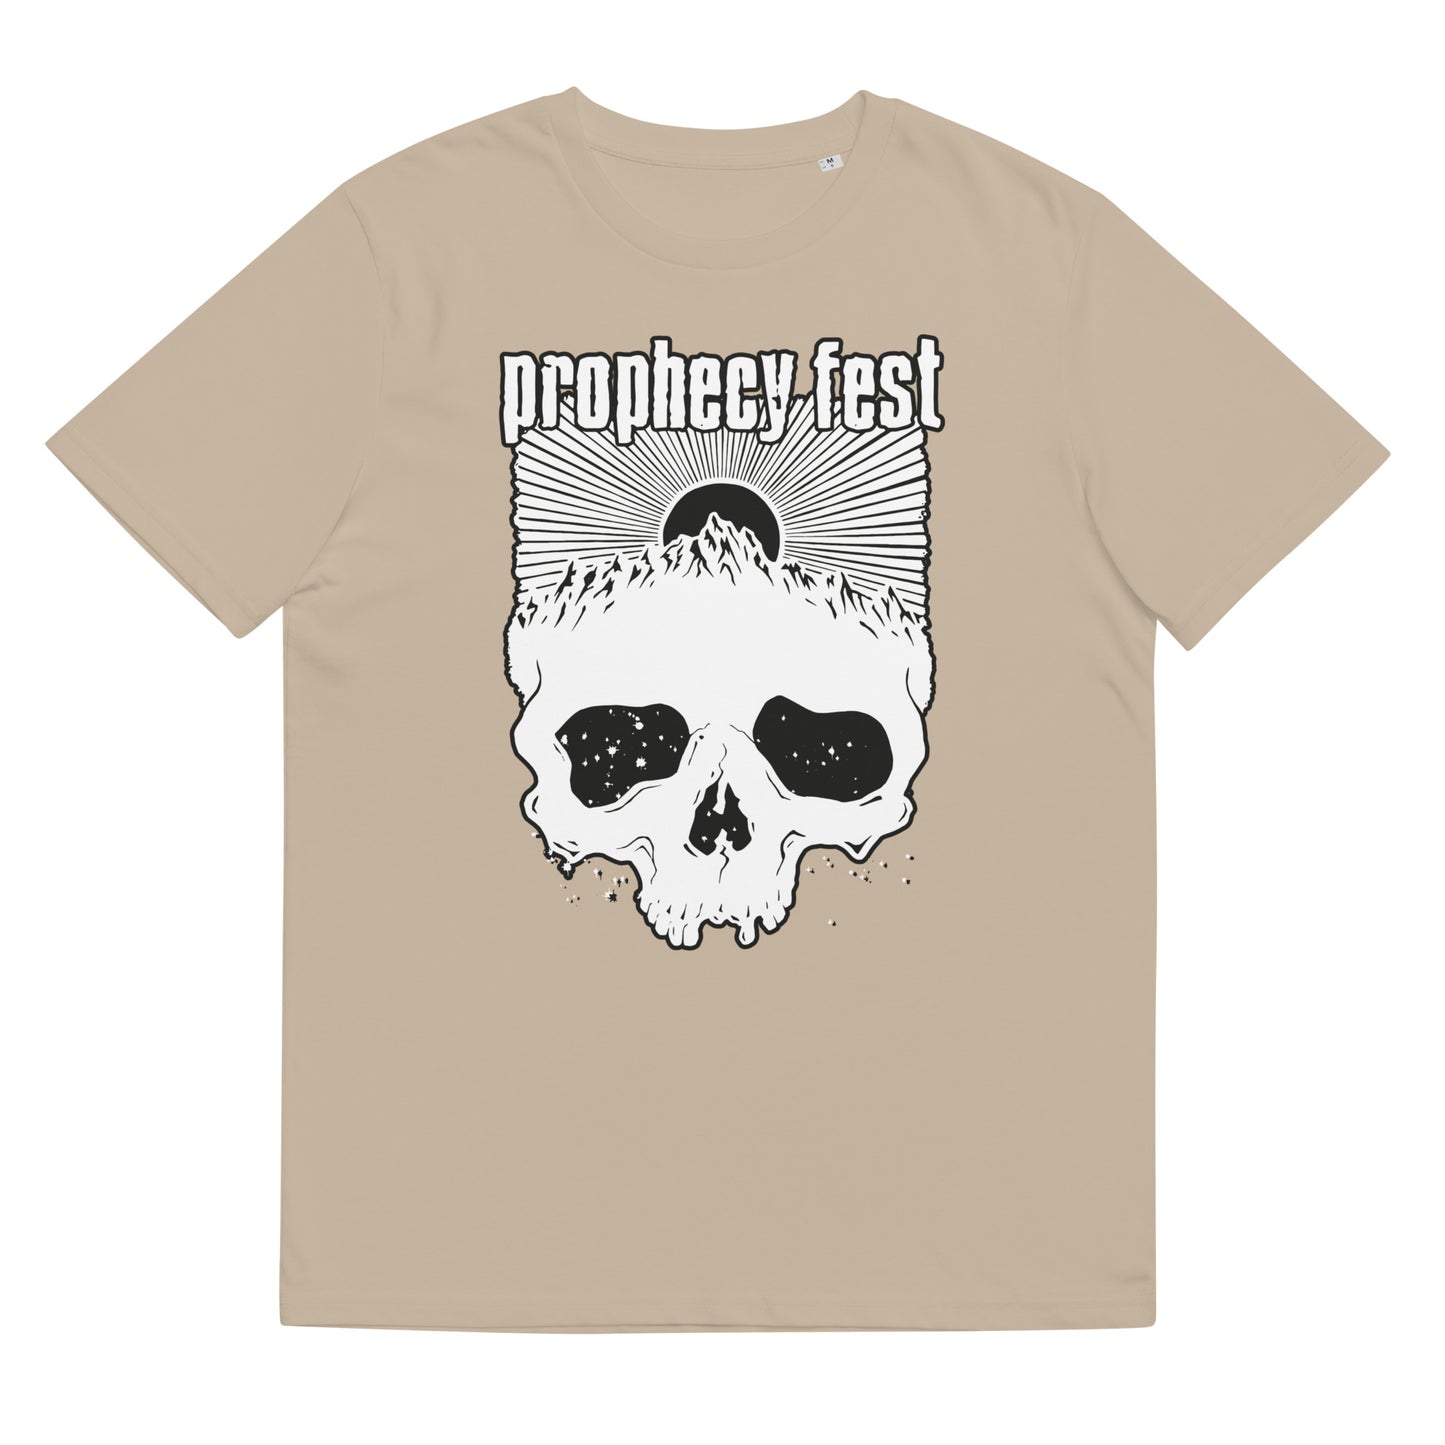 PROPHECY FEST - Unisex Organic Cotton T-Shirt